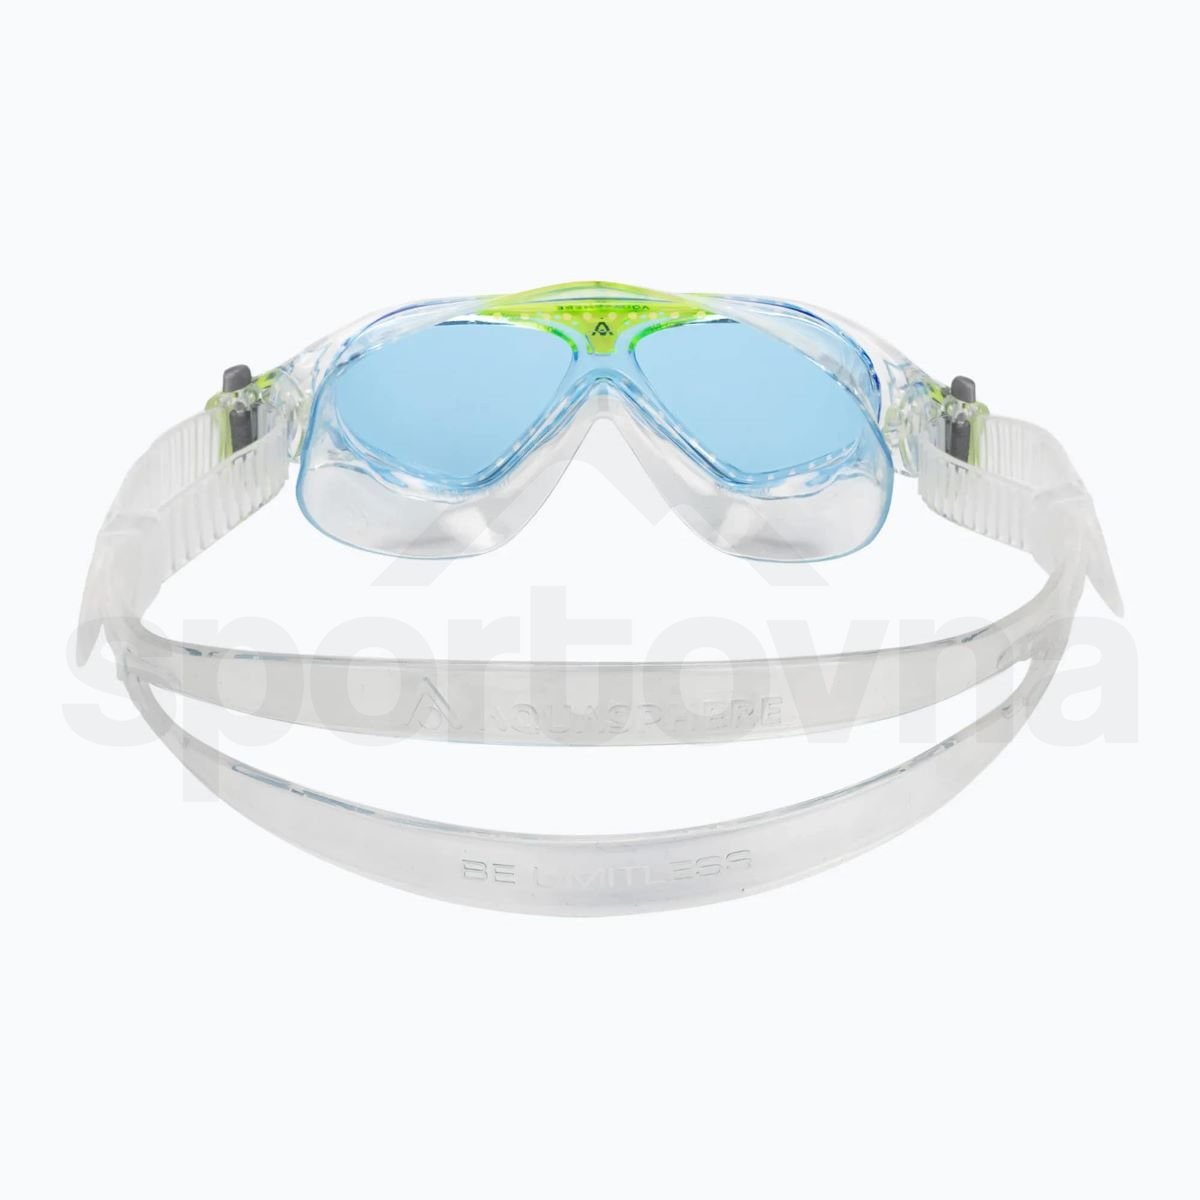 Brýle Aqua Sphere Vista J - bílá/modrá